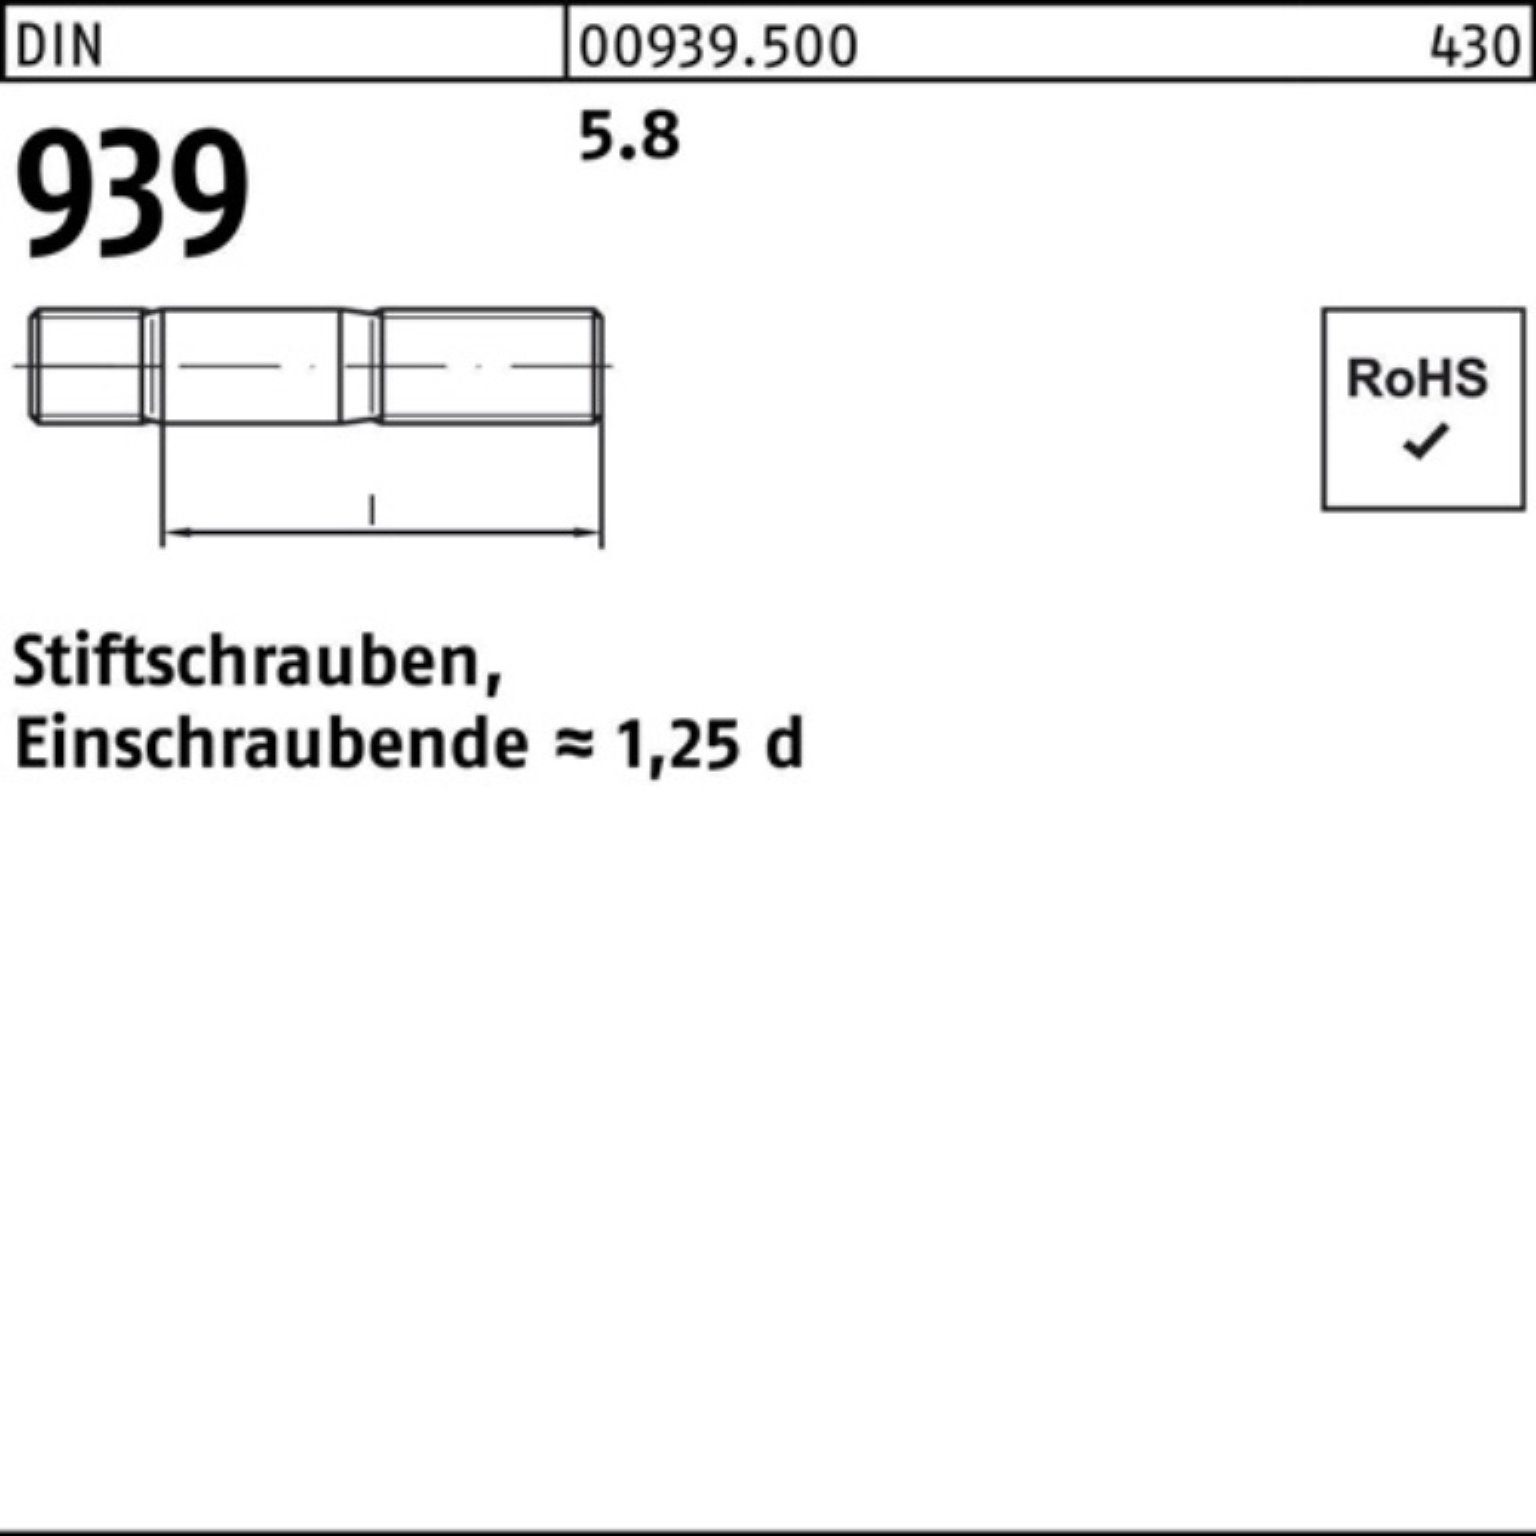 Reyher Stiftschraube 100er S 70 Pack 939 5.8 Stiftschraube 25 DIN M16x Einschraubende=1,25d